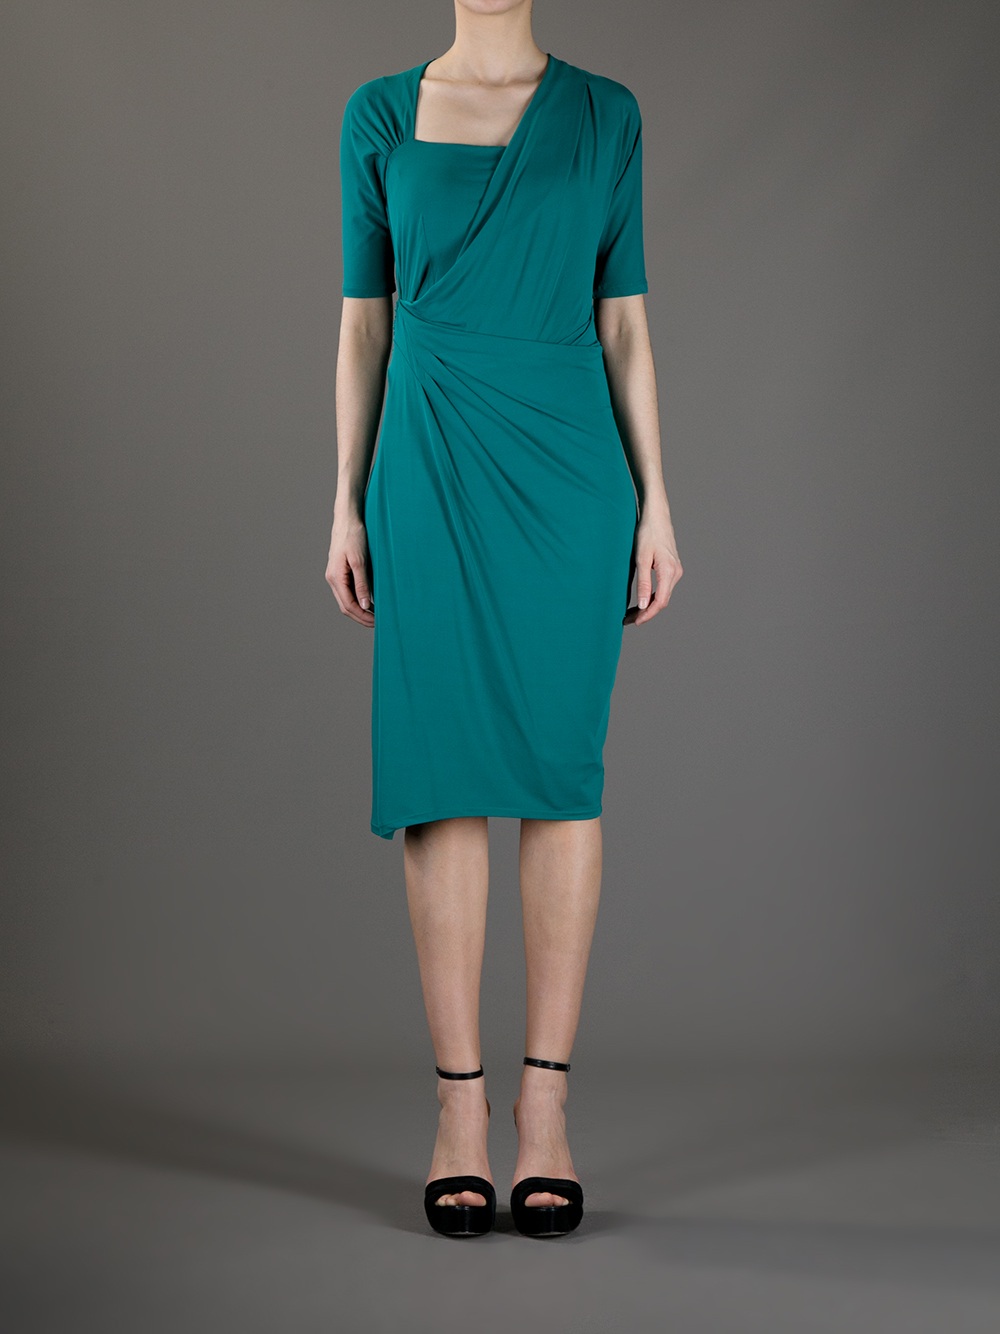 Lyst - Max Mara Studio Wrap Dress in Green